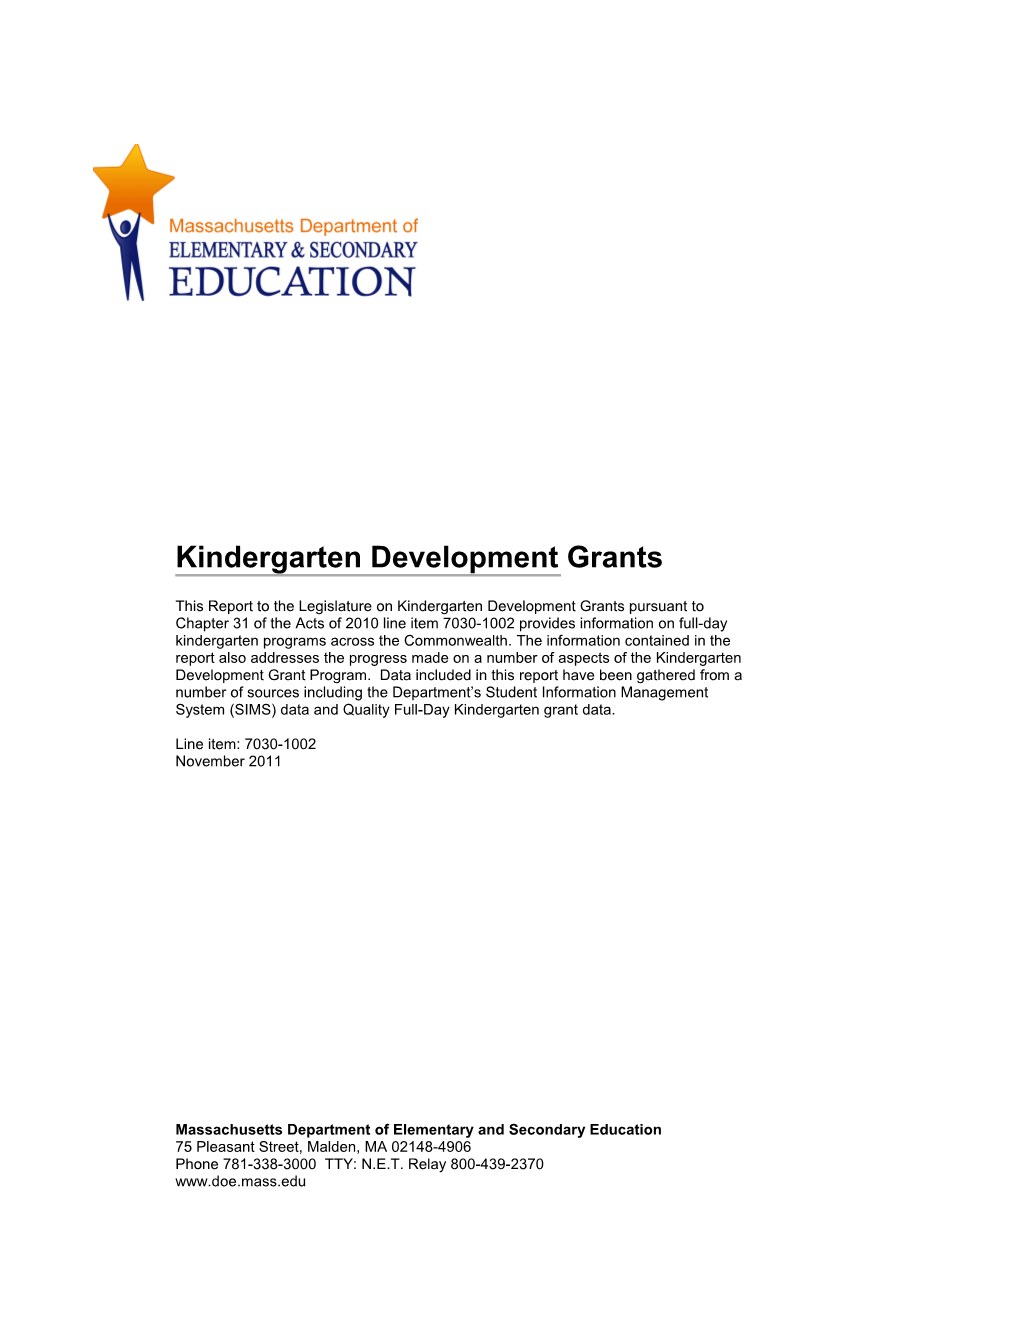 Kindergarten Grant Report FY11